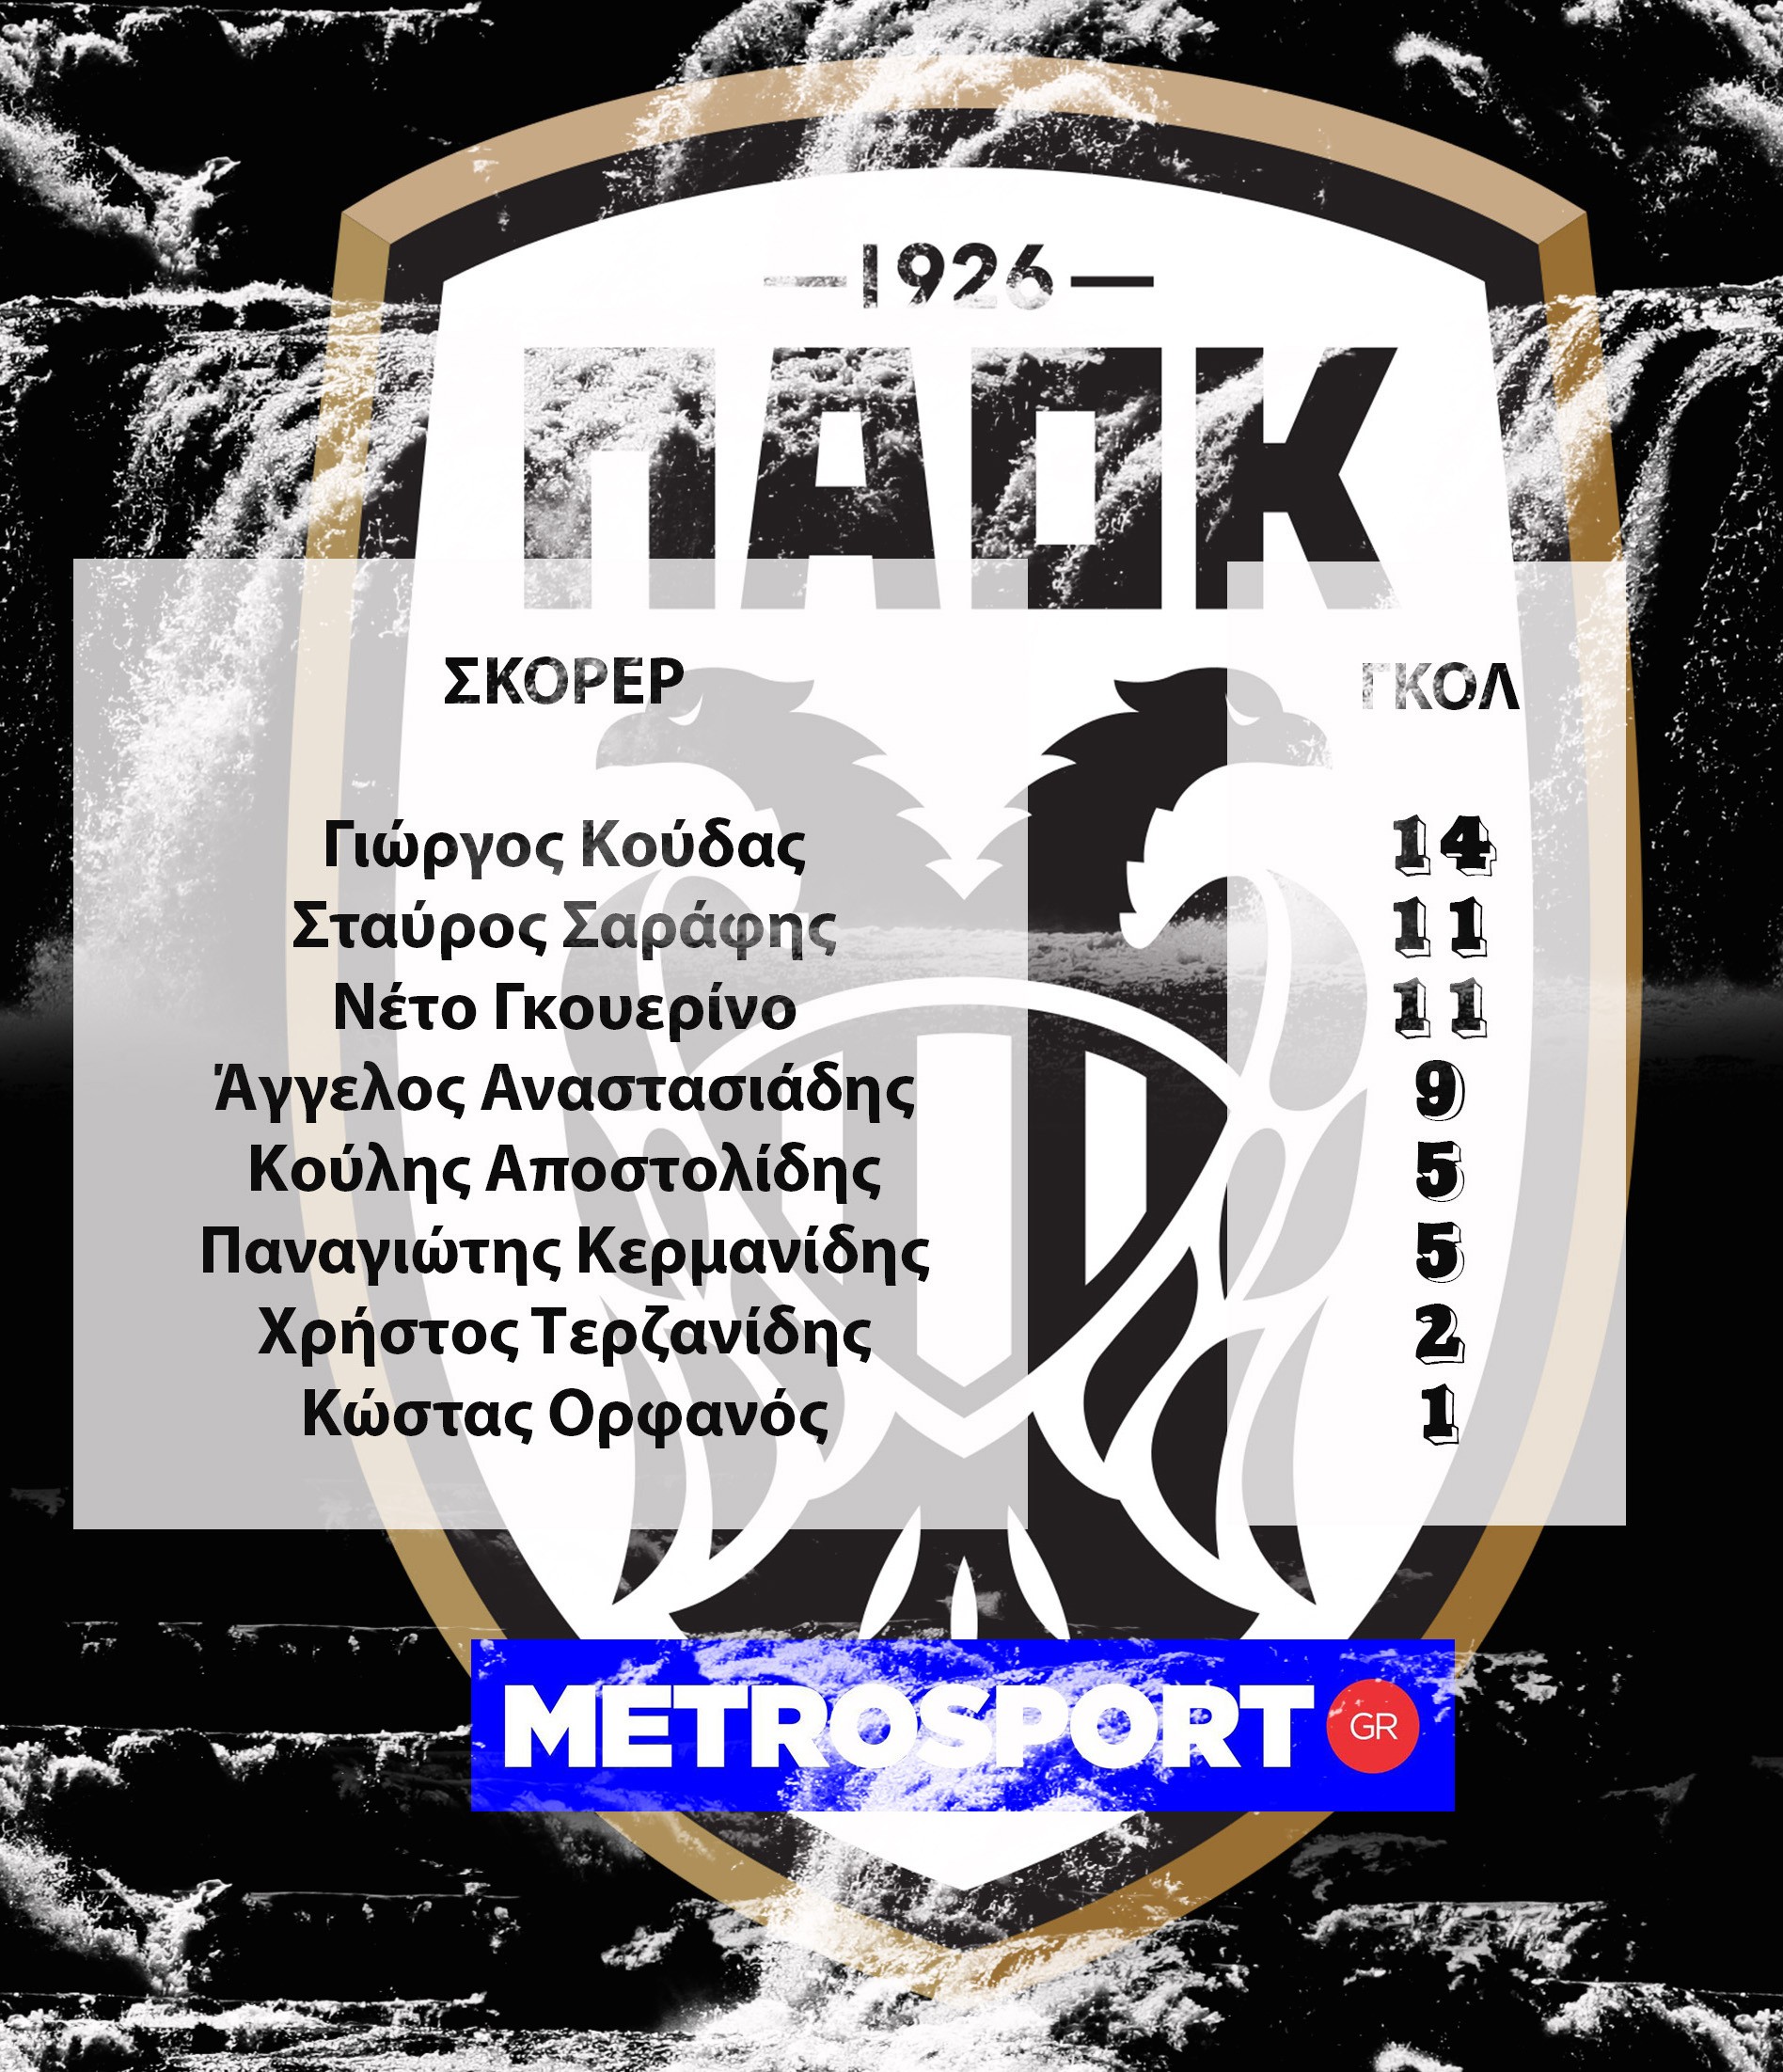 paok-1976-goals.jpg